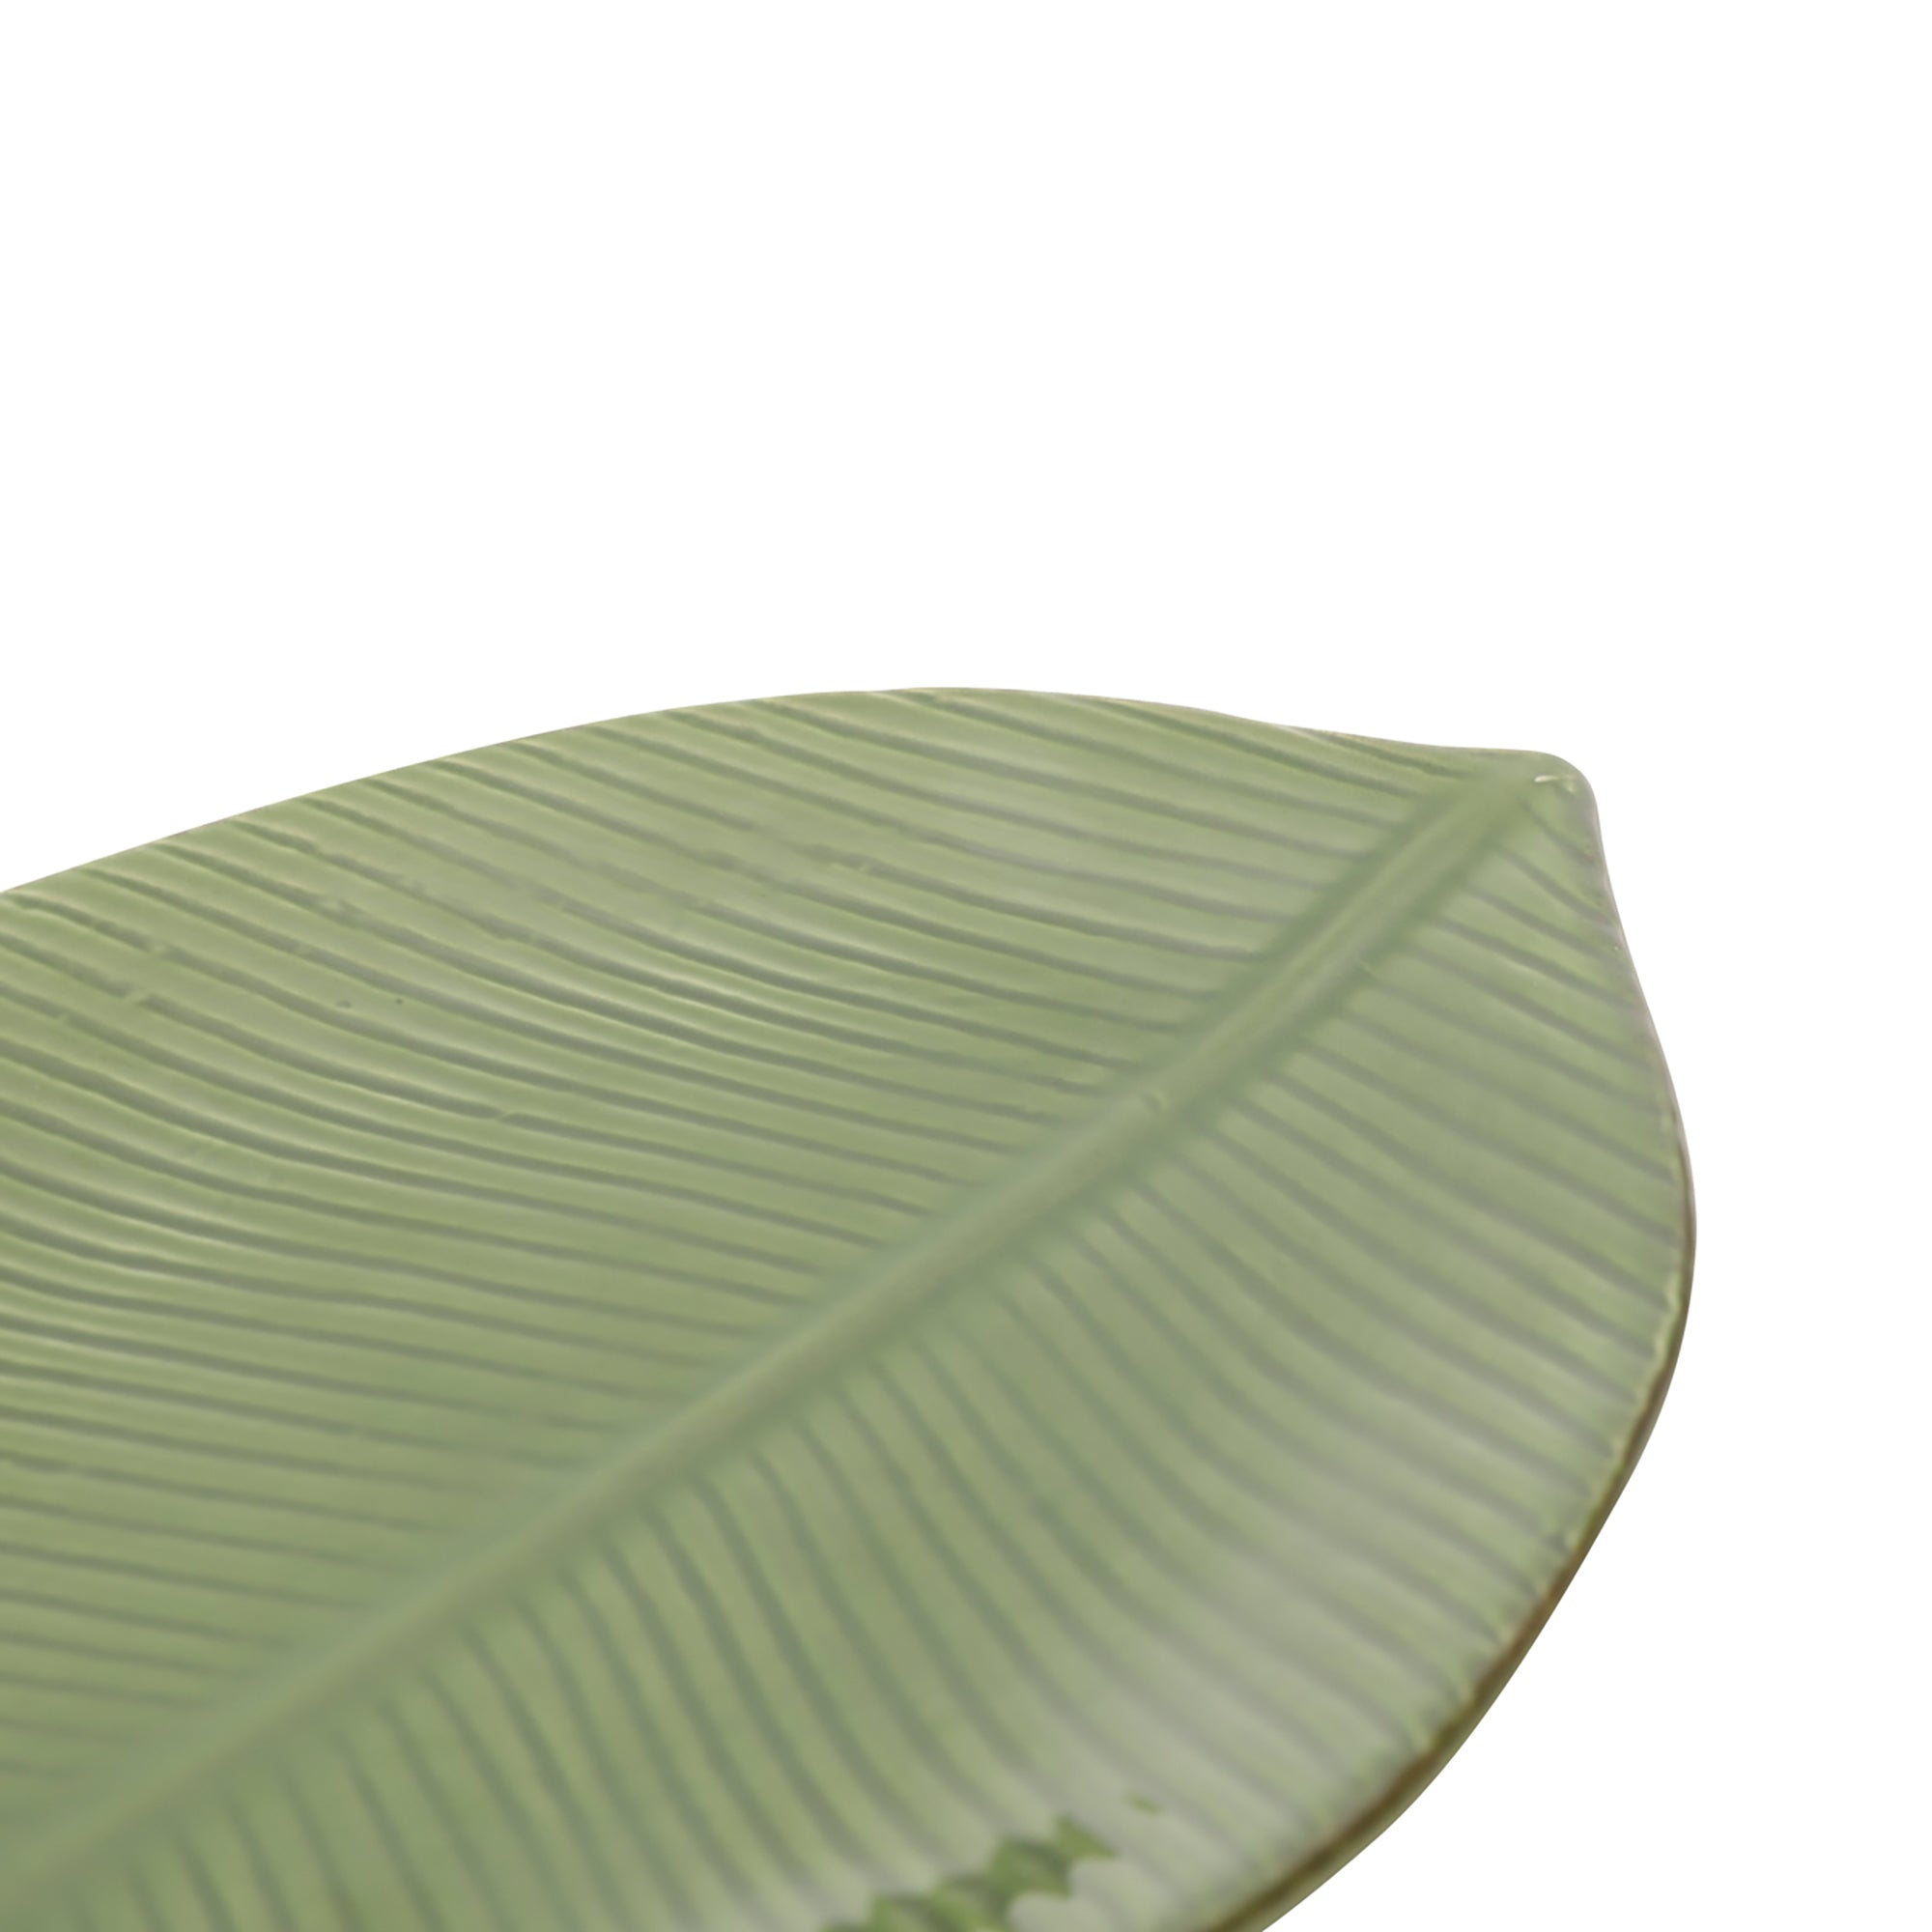 Petisqueira Leaf Verde - 26,5x15,5cm